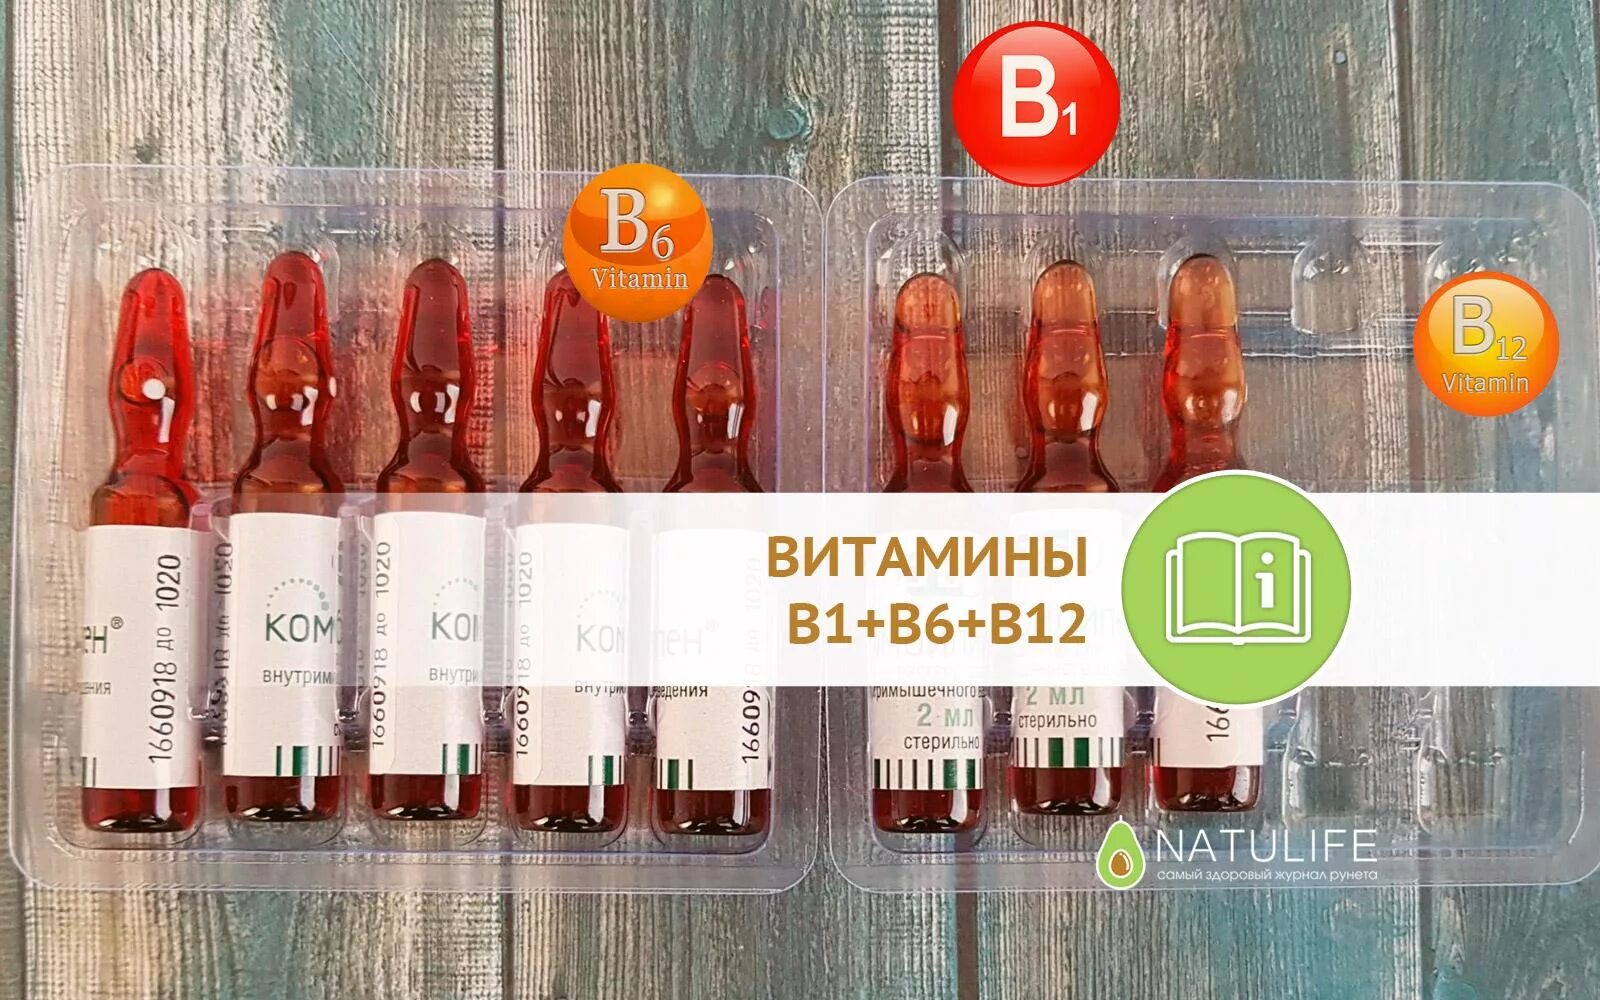 Витамины б1 б6 уколы. Комплекс витаминов б1 б6 б12 в ампулах. B1 b6 b12 витамины в ампулах JN pfgjz. Комплекс б1 б6 б12 уколы витамины. Витамин б 1 уколы